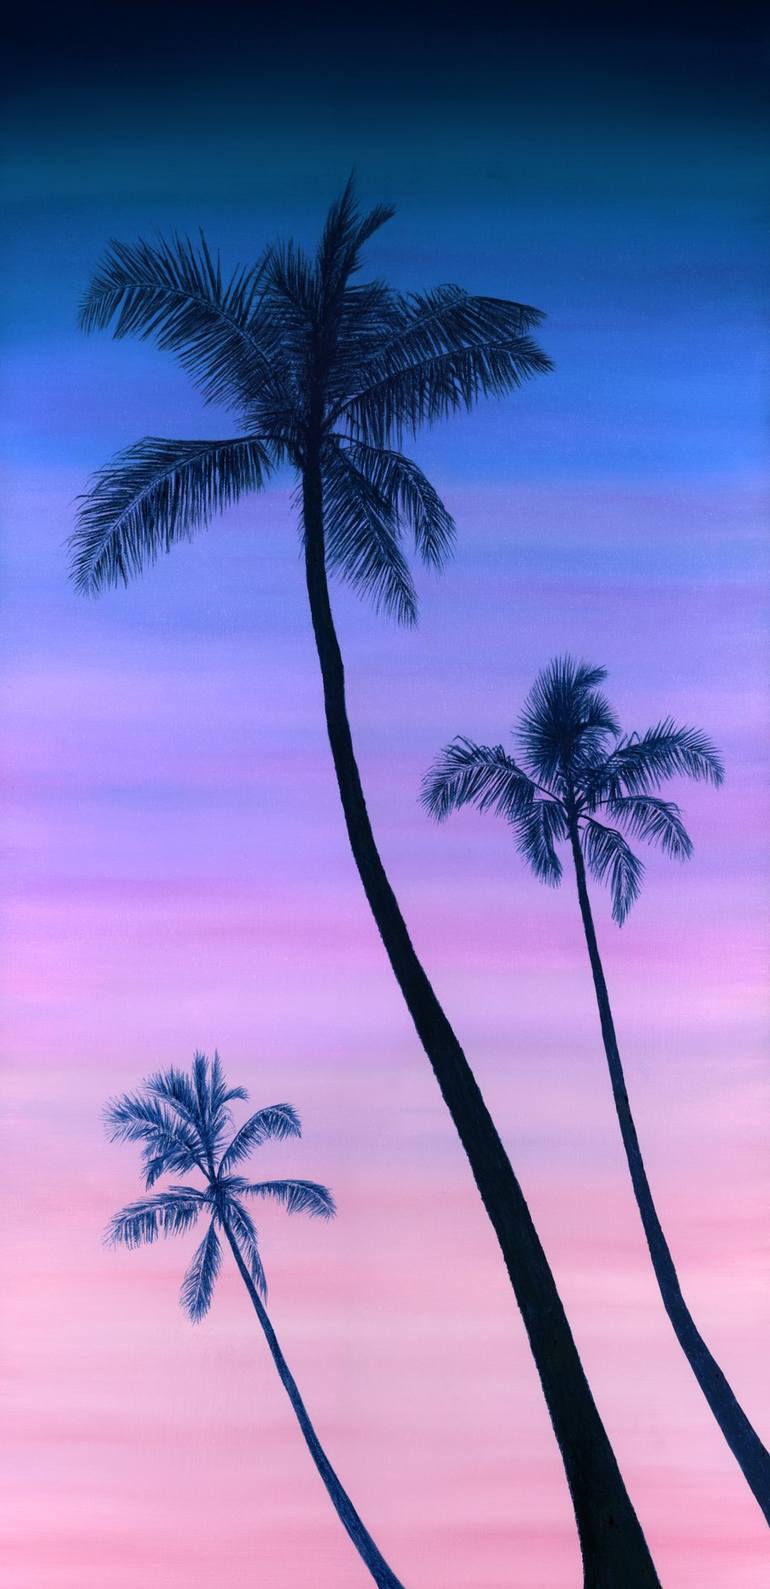 Palm tree sunset paintings